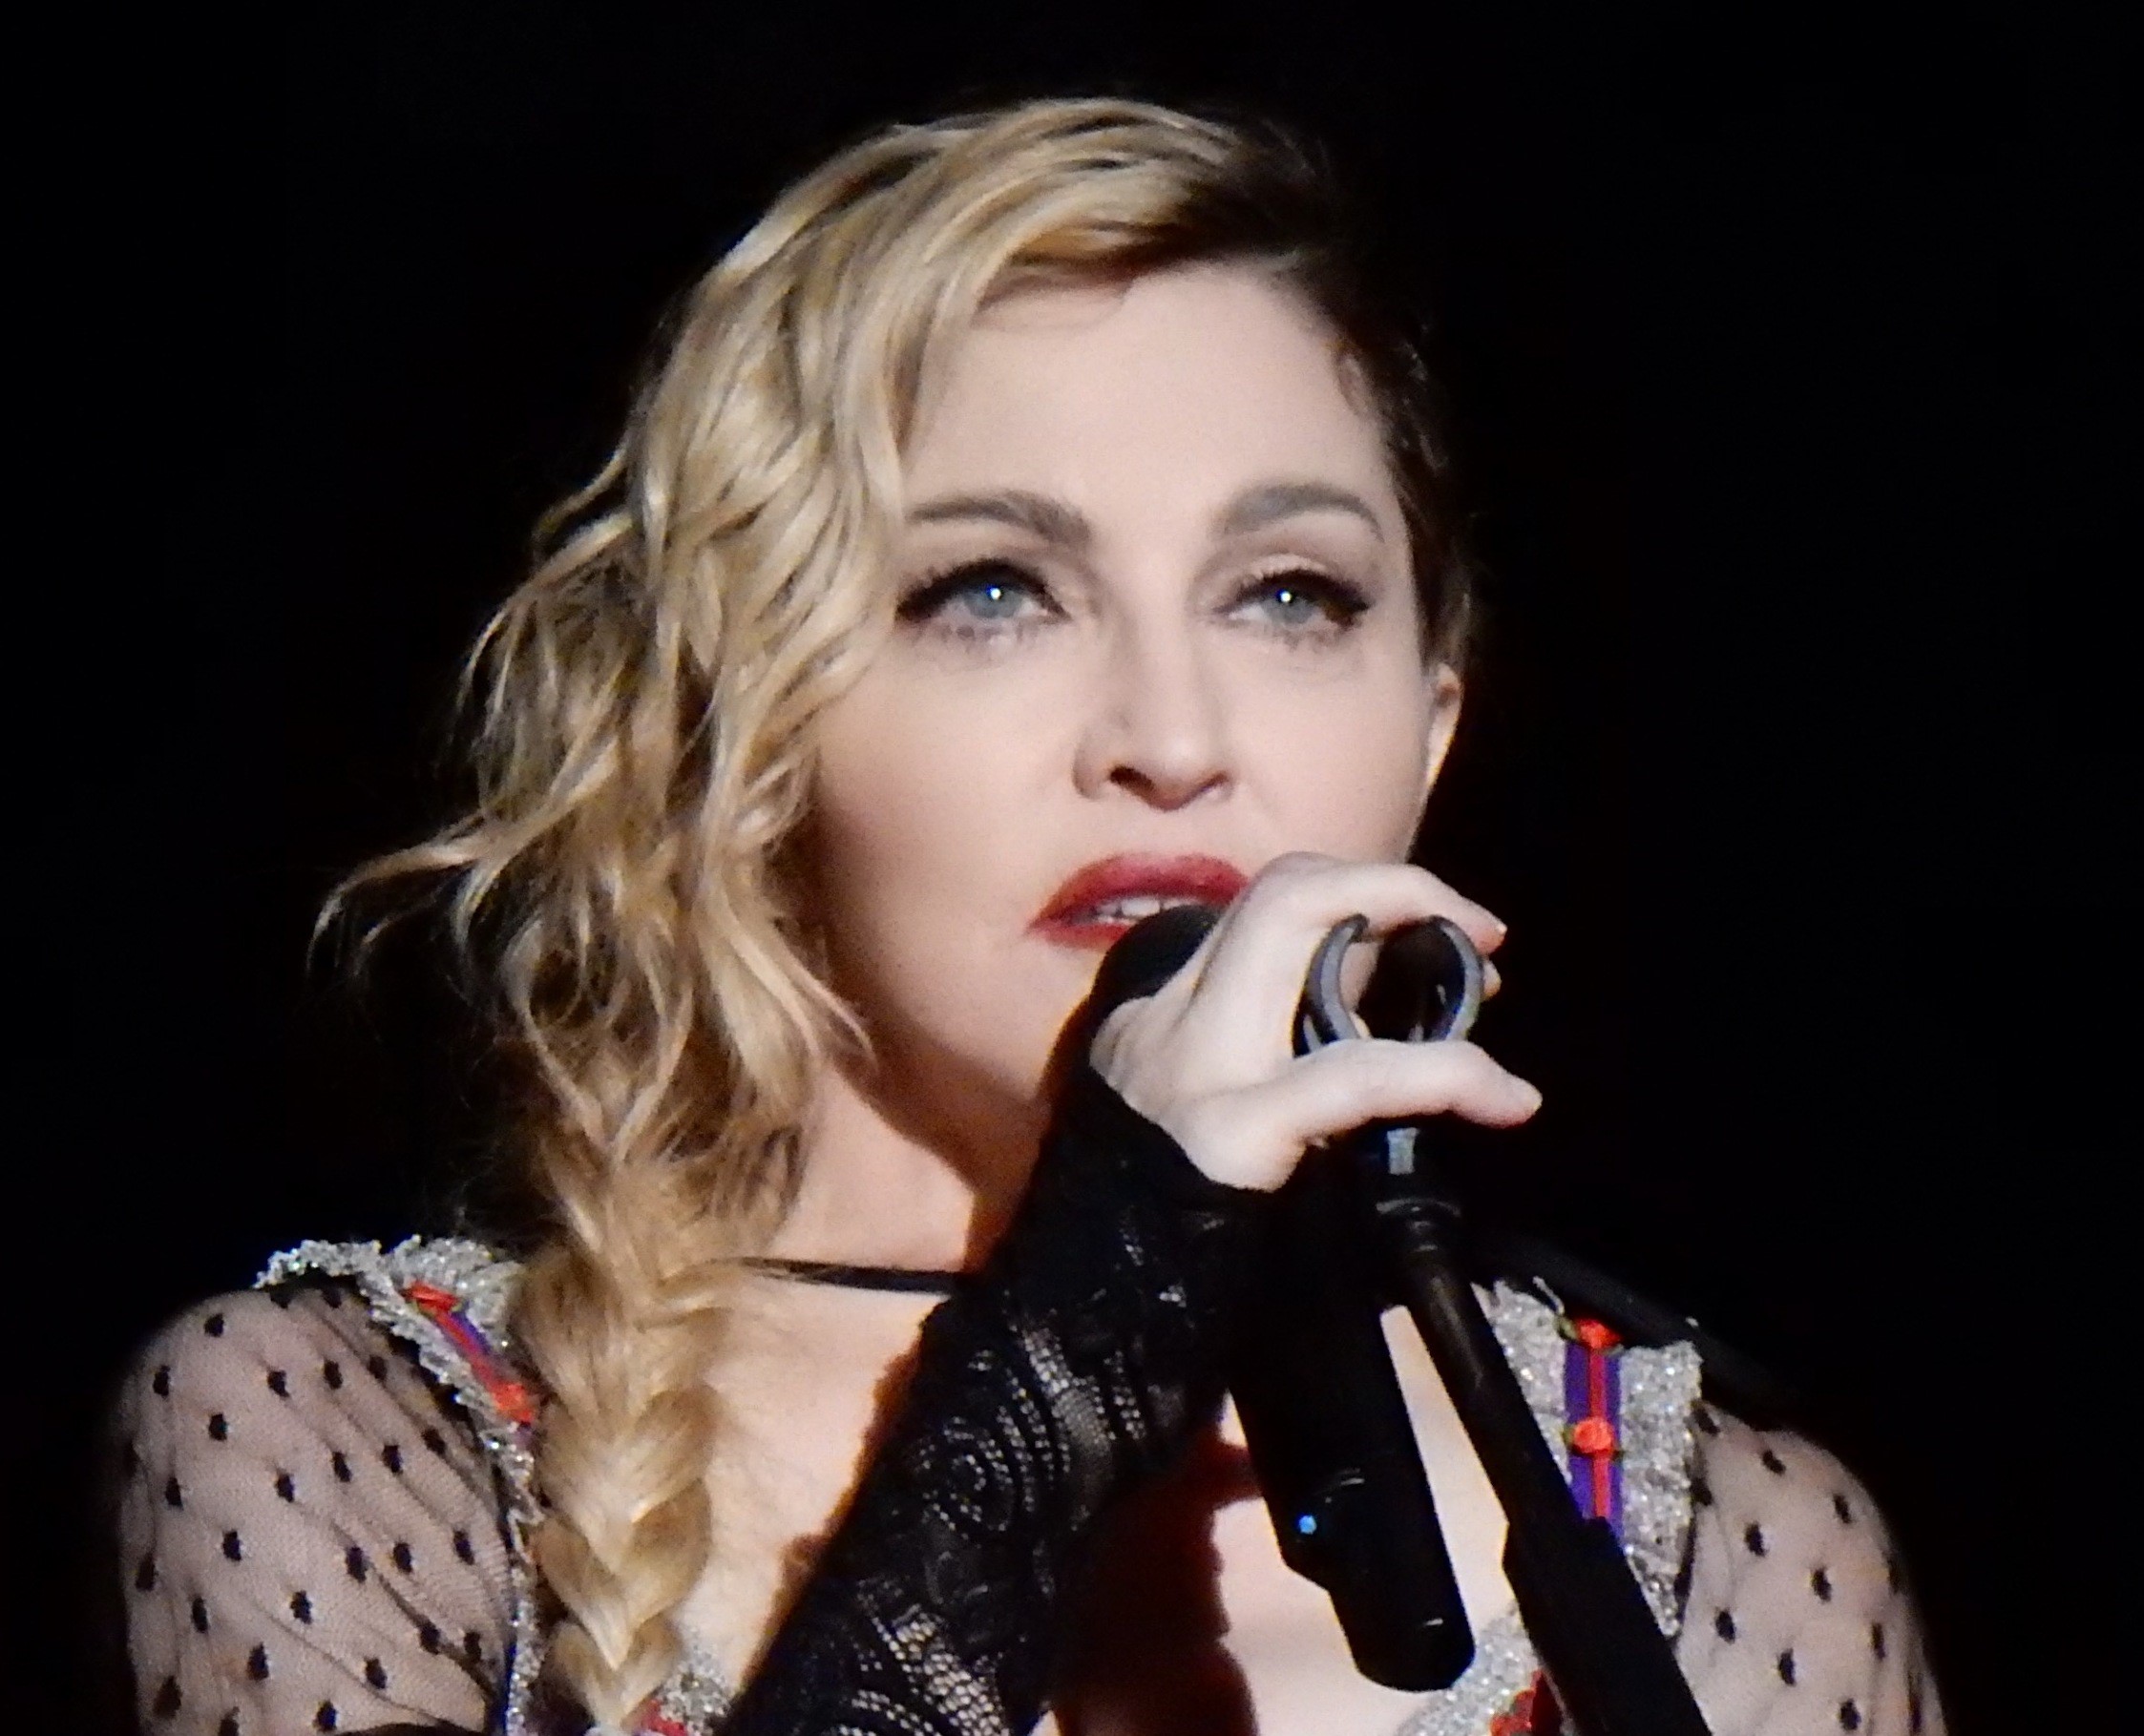 Madonna sahneye geç çıktı, 3 hayranı şikayette bulundu